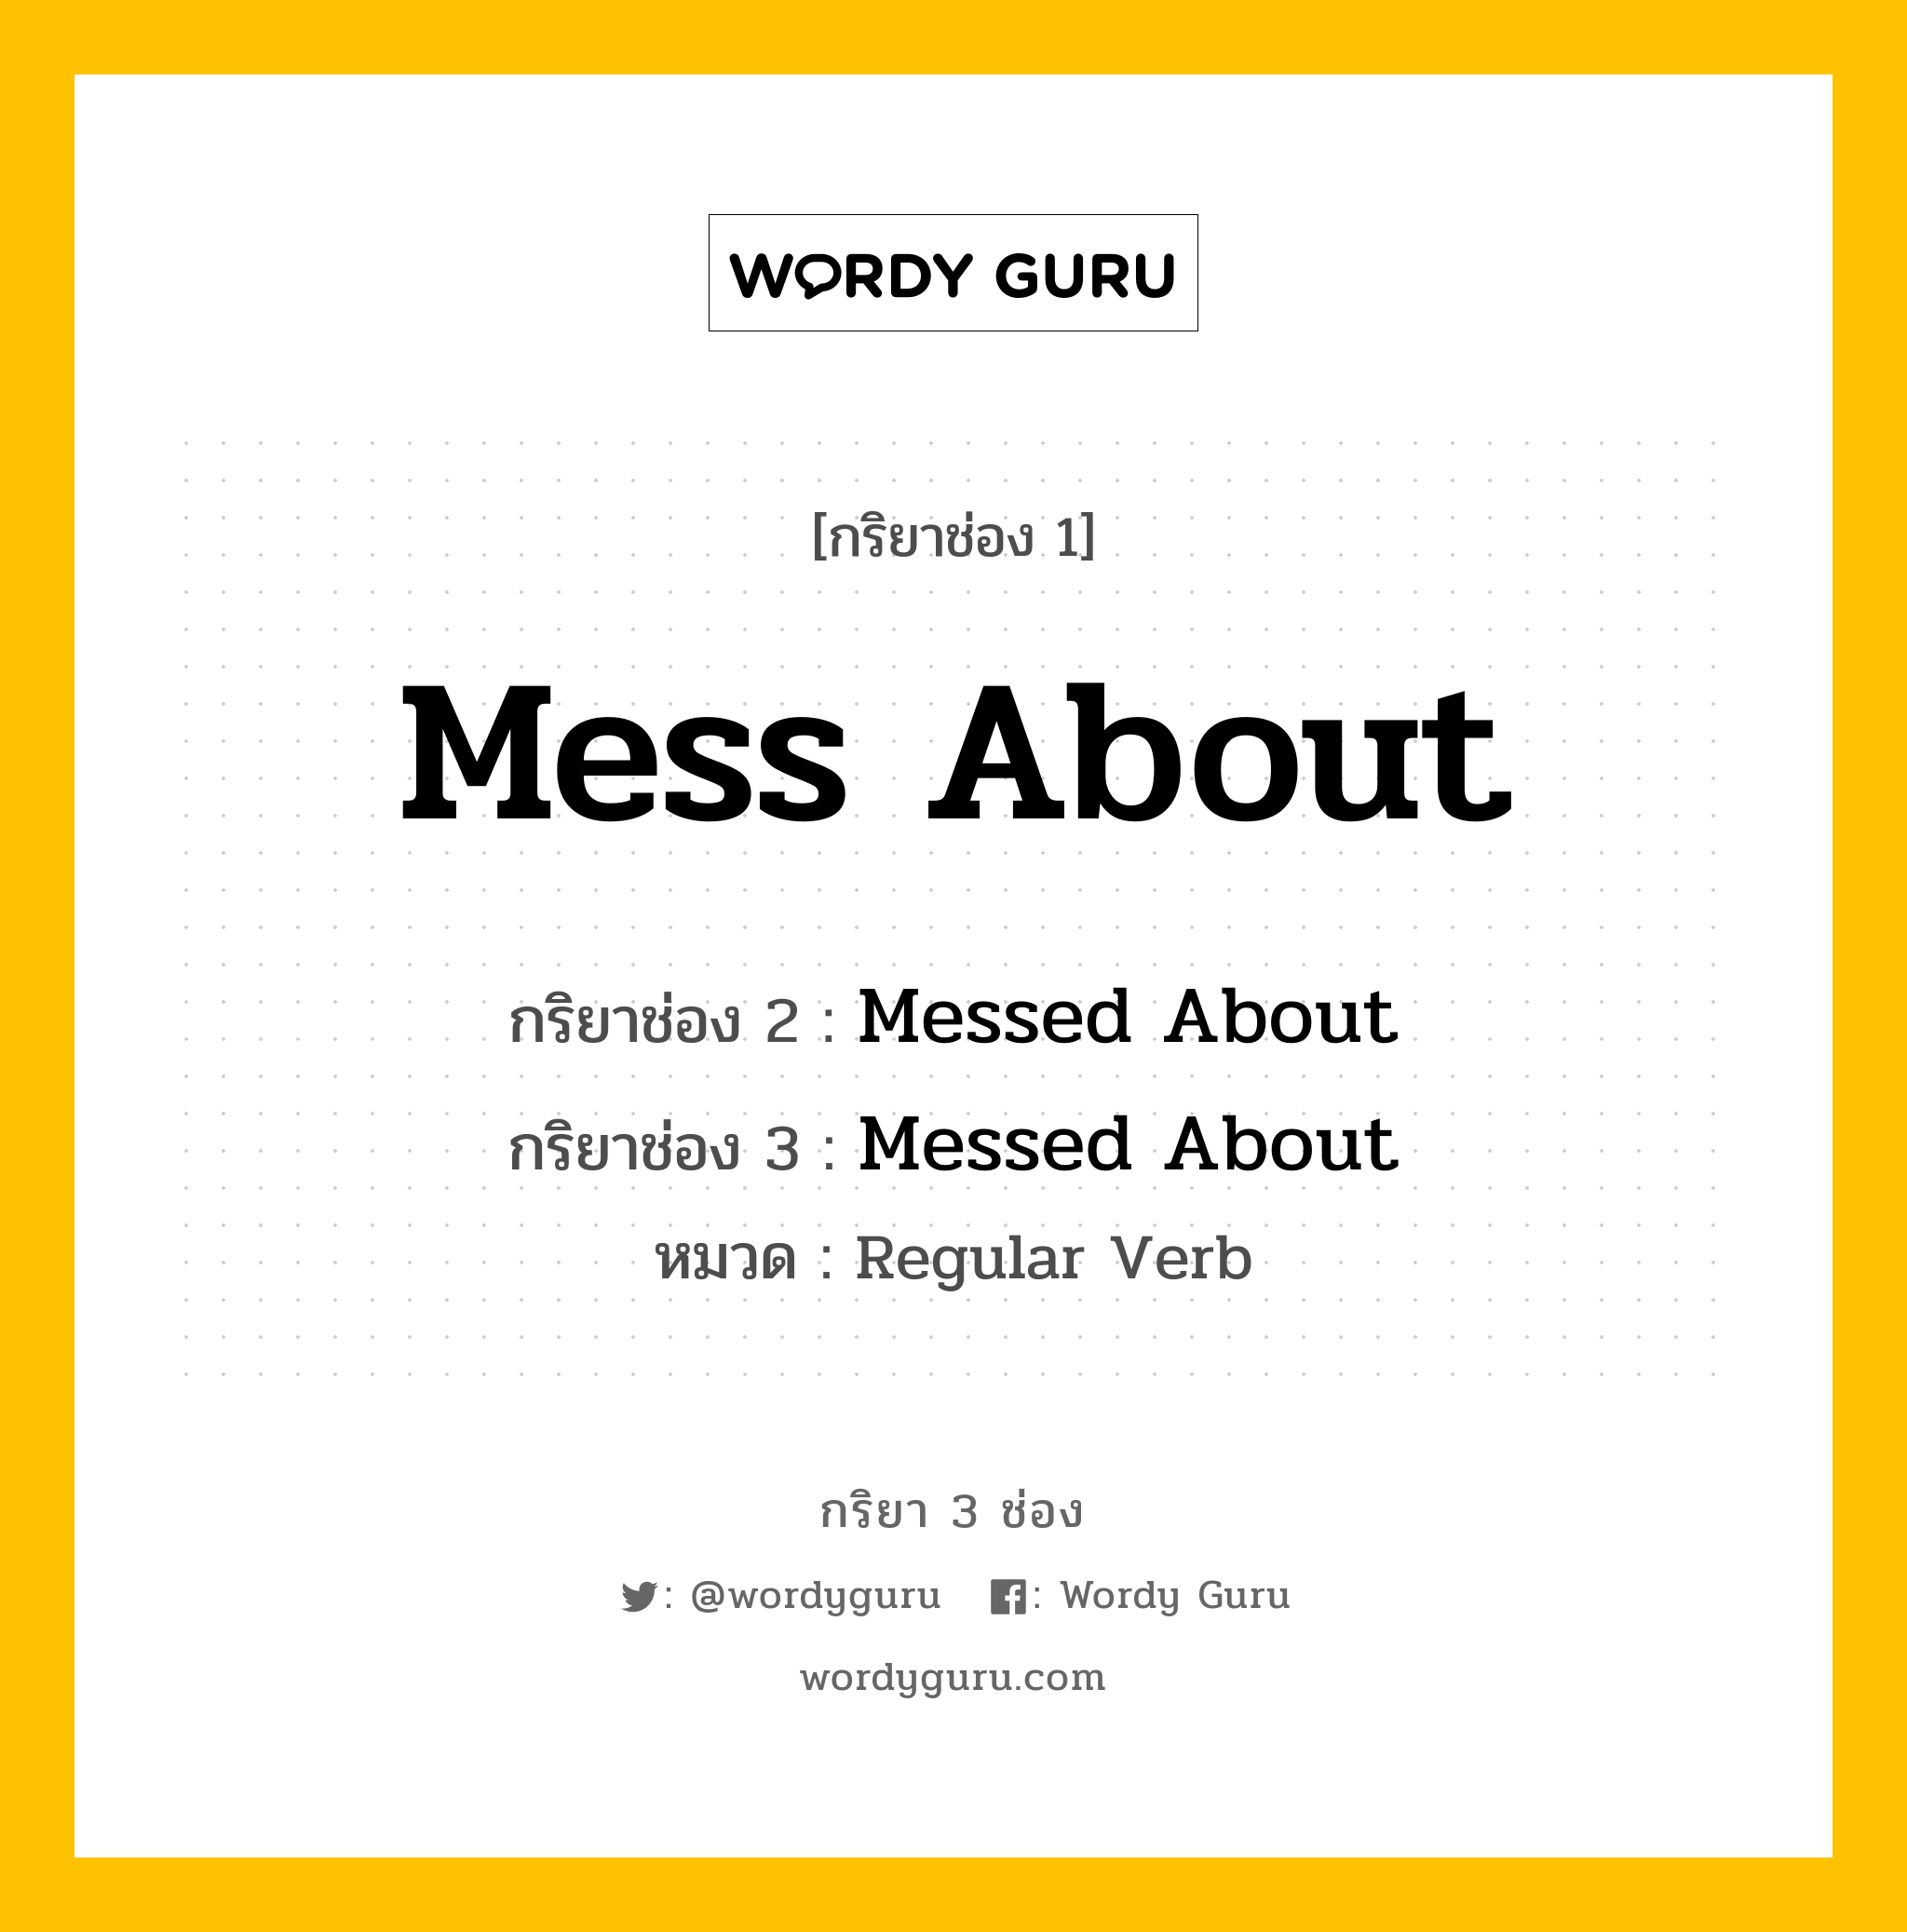 กริยา 3 ช่อง: Mess About ช่อง 2 Mess About ช่อง 3 คืออะไร, กริยาช่อง 1 Mess About กริยาช่อง 2 Messed About กริยาช่อง 3 Messed About หมวด Regular Verb หมวด Regular Verb